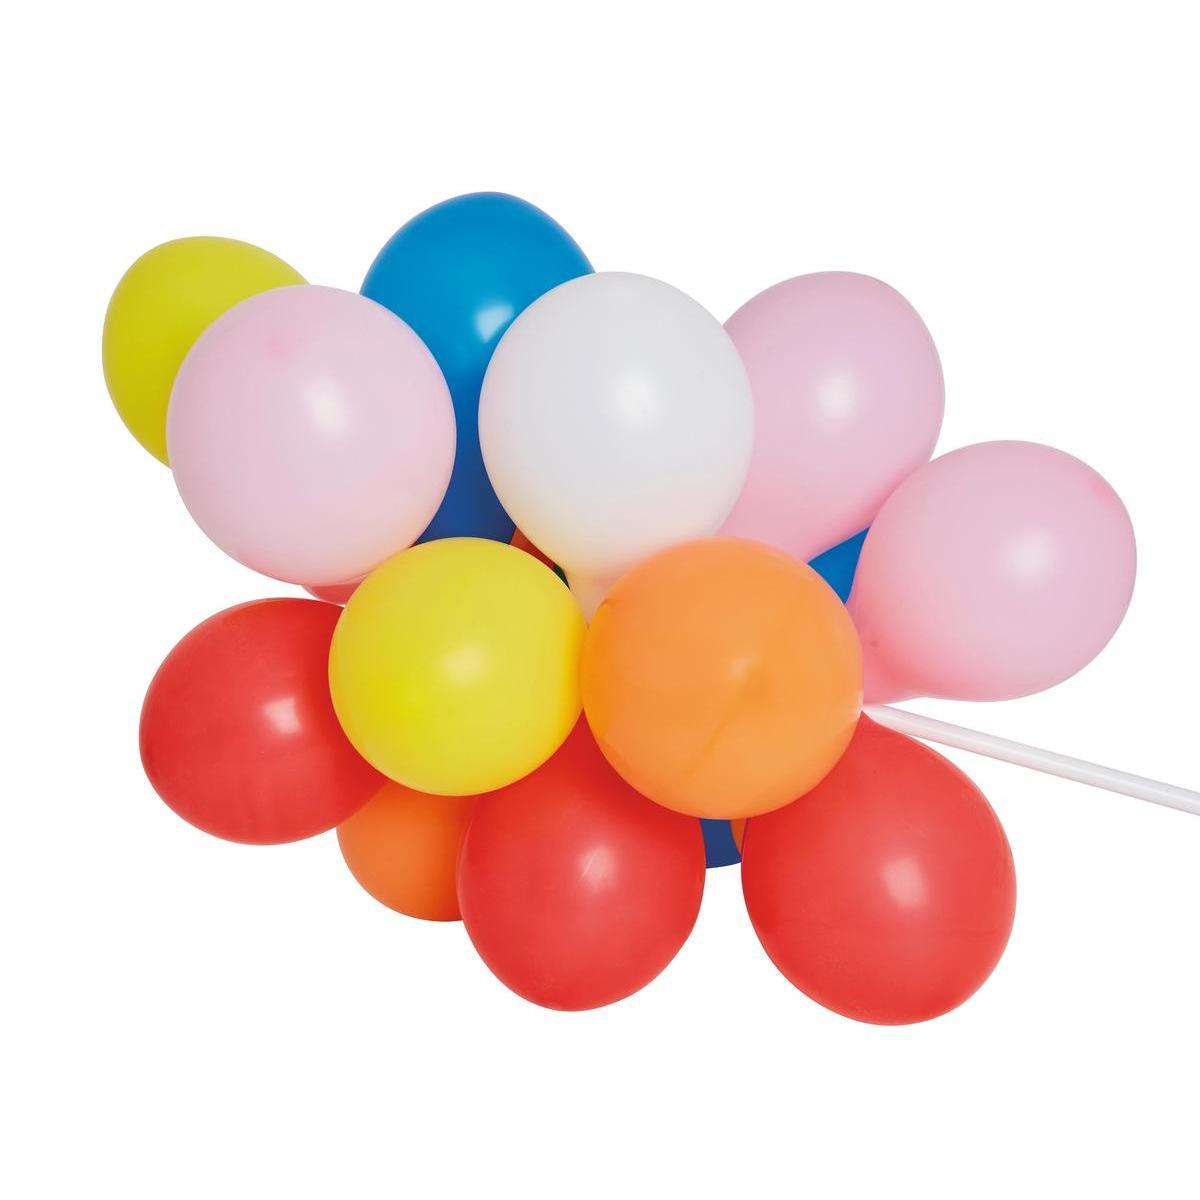 50 ballons assortis - 17.5 cm - Différents modèles - Multicolore